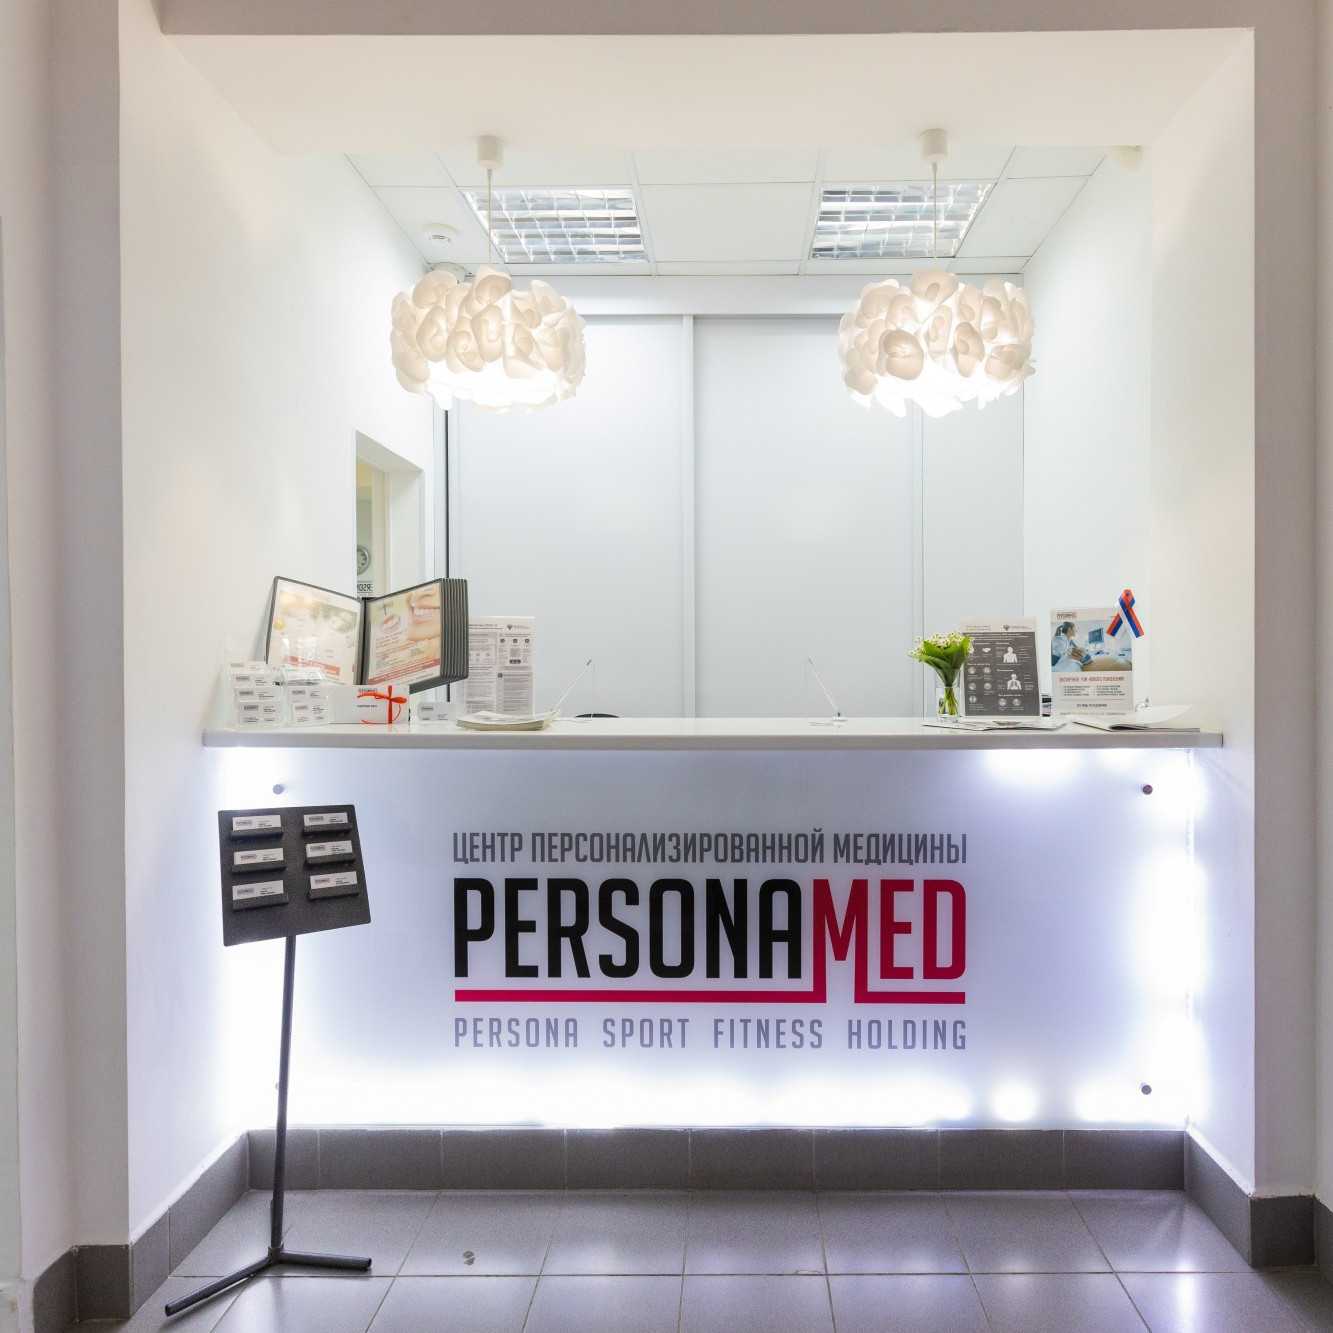 Центр персонализированной медицины PERSONAMED (ПЕРСОНАМЕД)